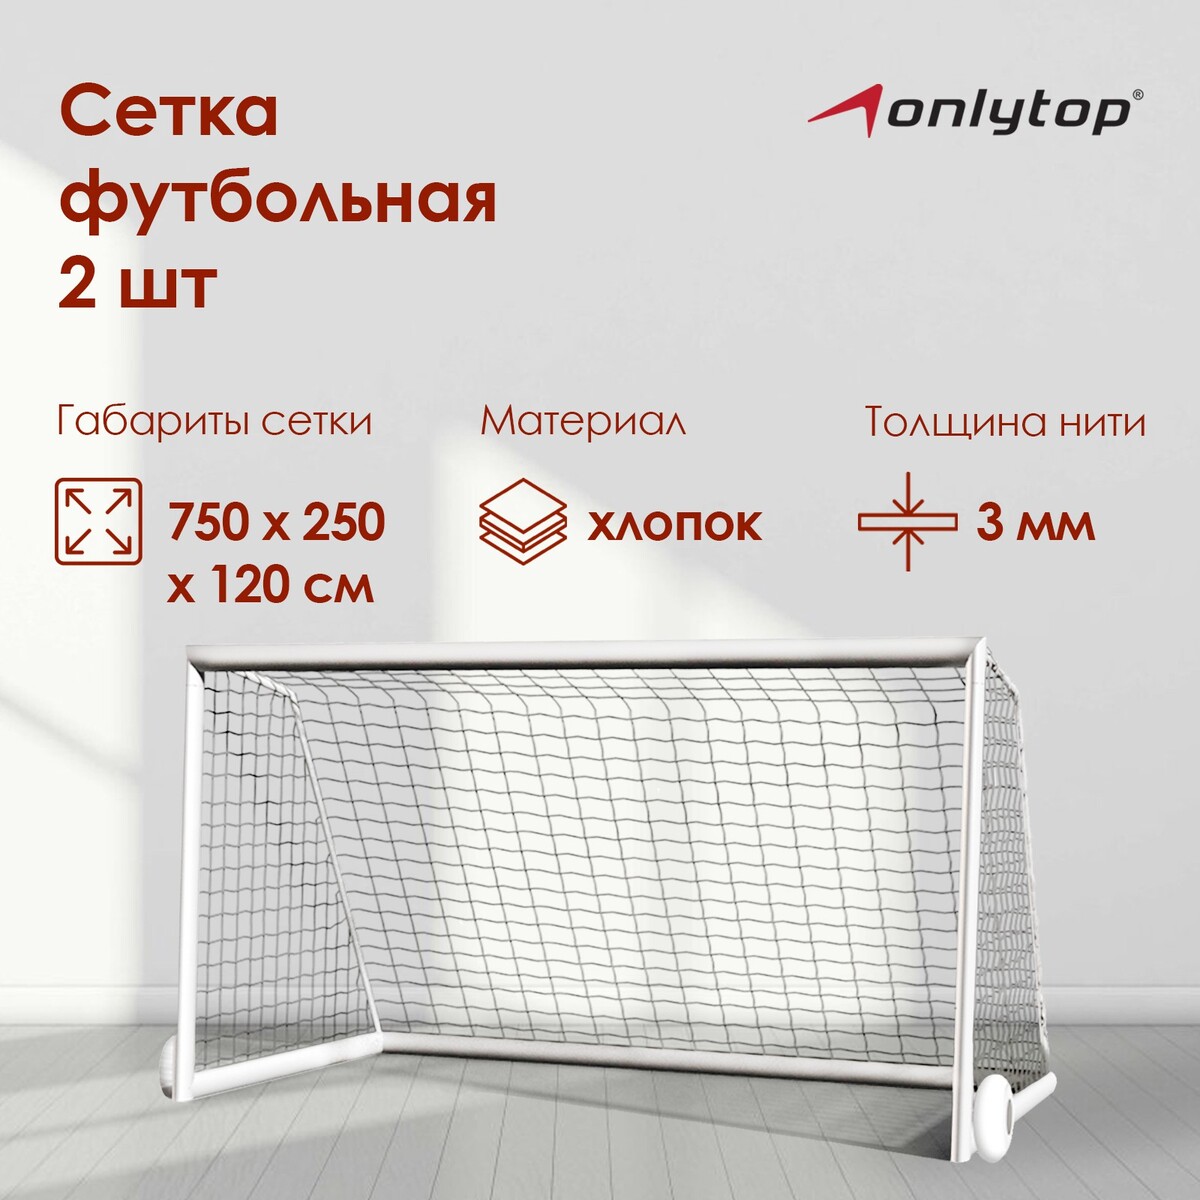 Сетка футбольная onlytop, 7,32х2,44 м, нить 3 мм, 2 шт.